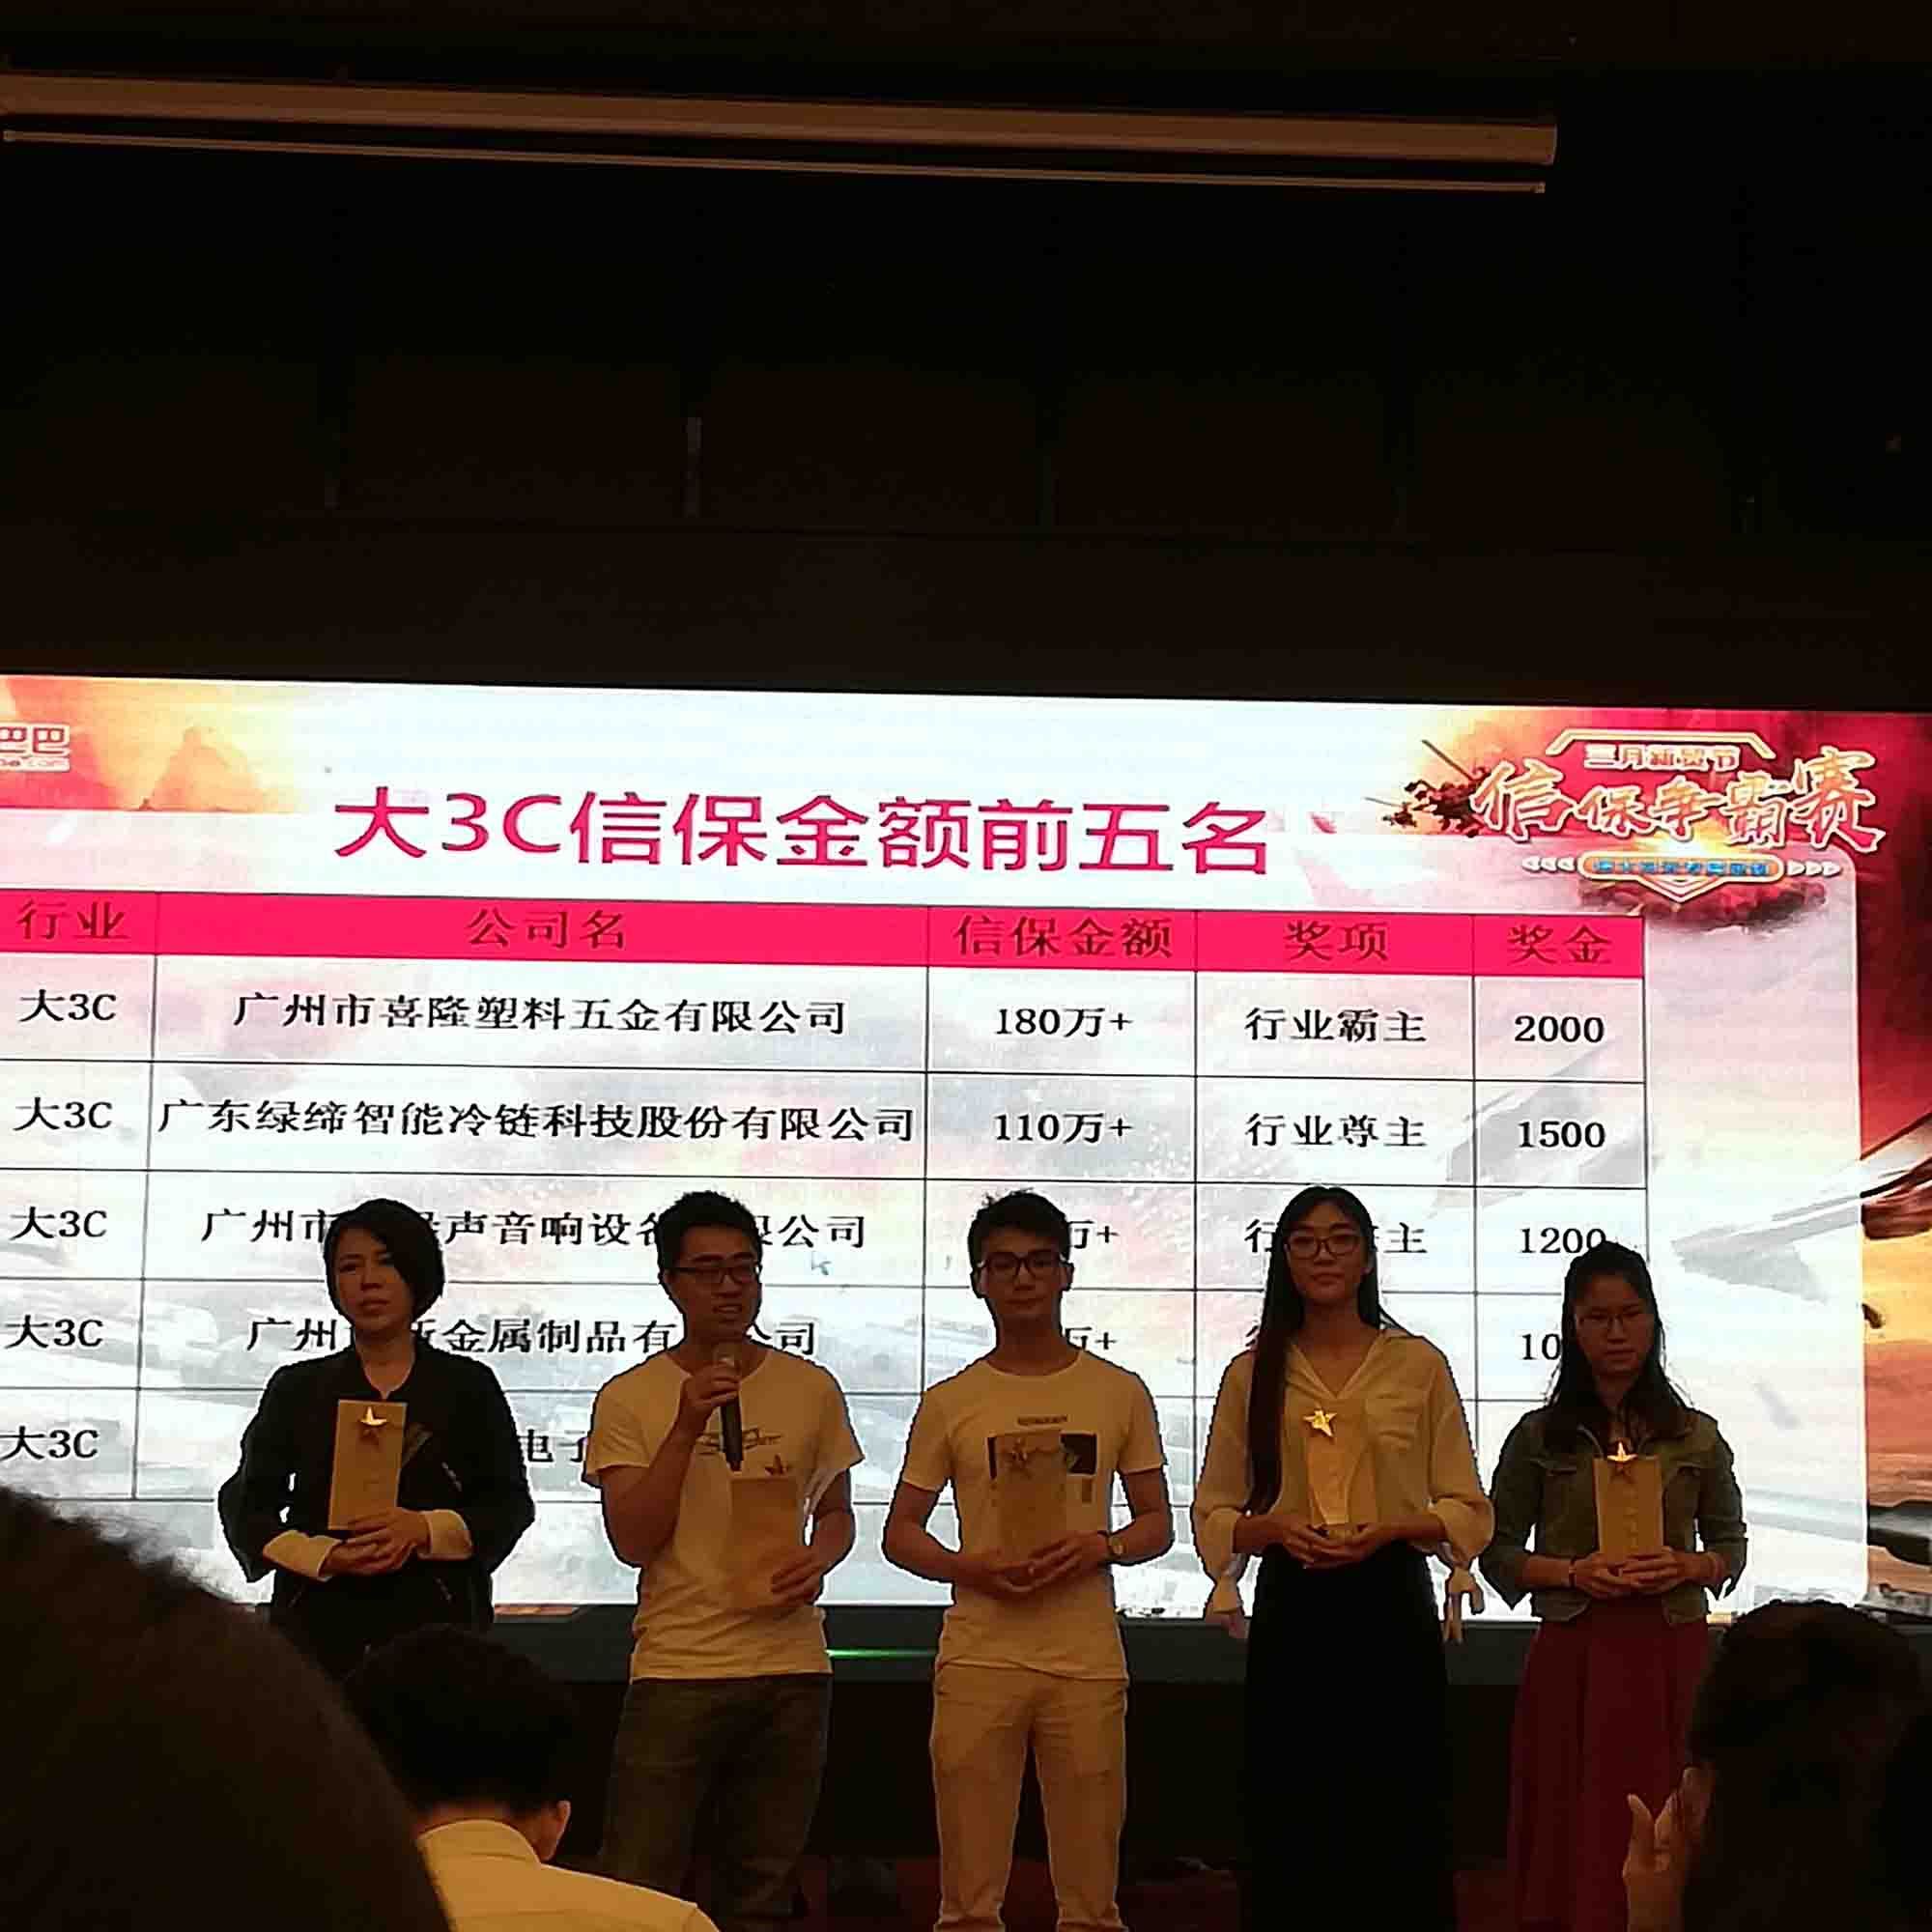 Felicitar nossa empresa obteve o terceiro lugar no Alibaba Trade Assurance Competition